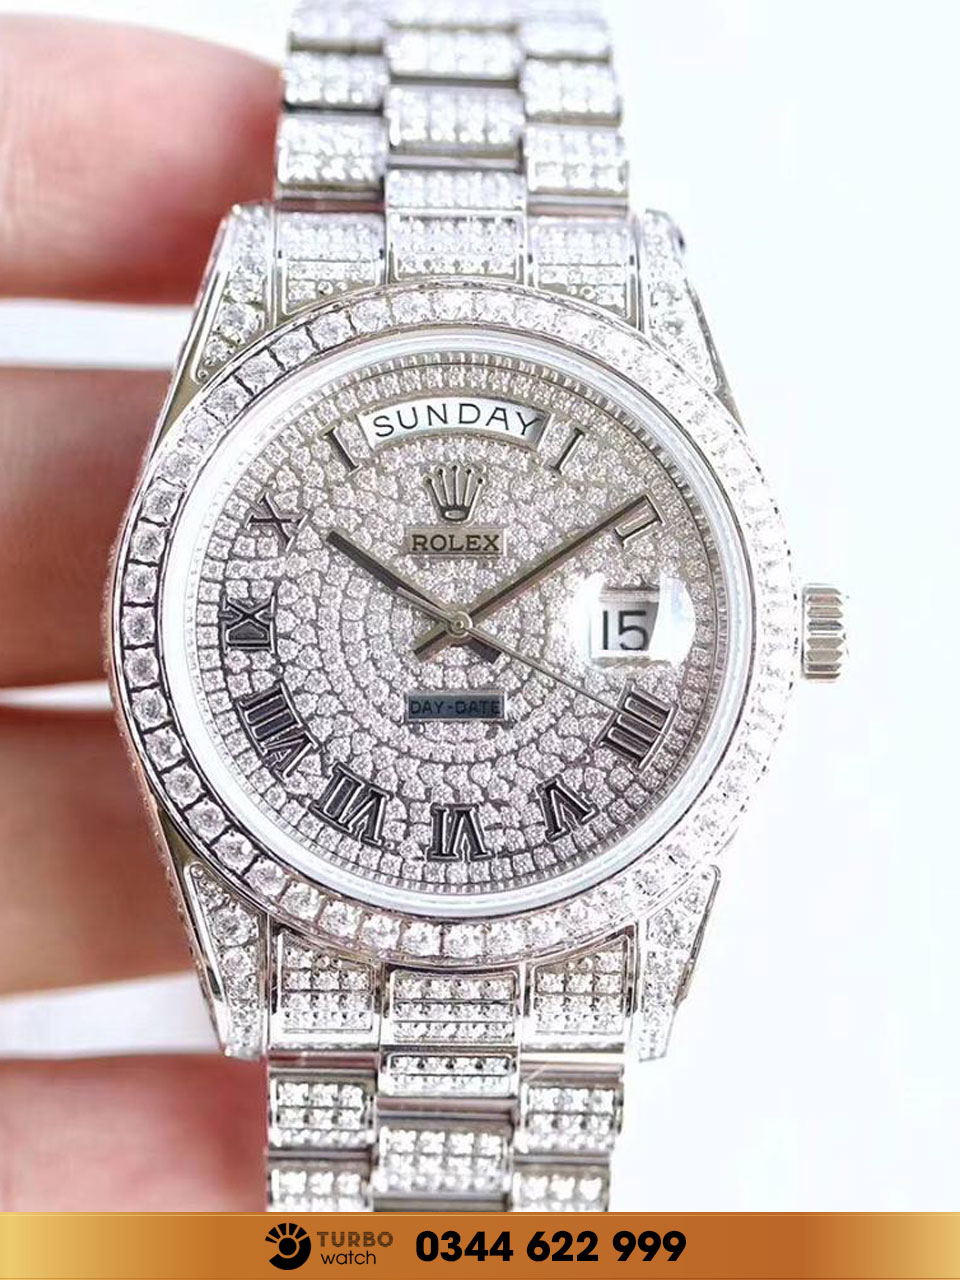 Vì sao nên mua đồng hồ Rolex super fake ở địa chỉ uy tín